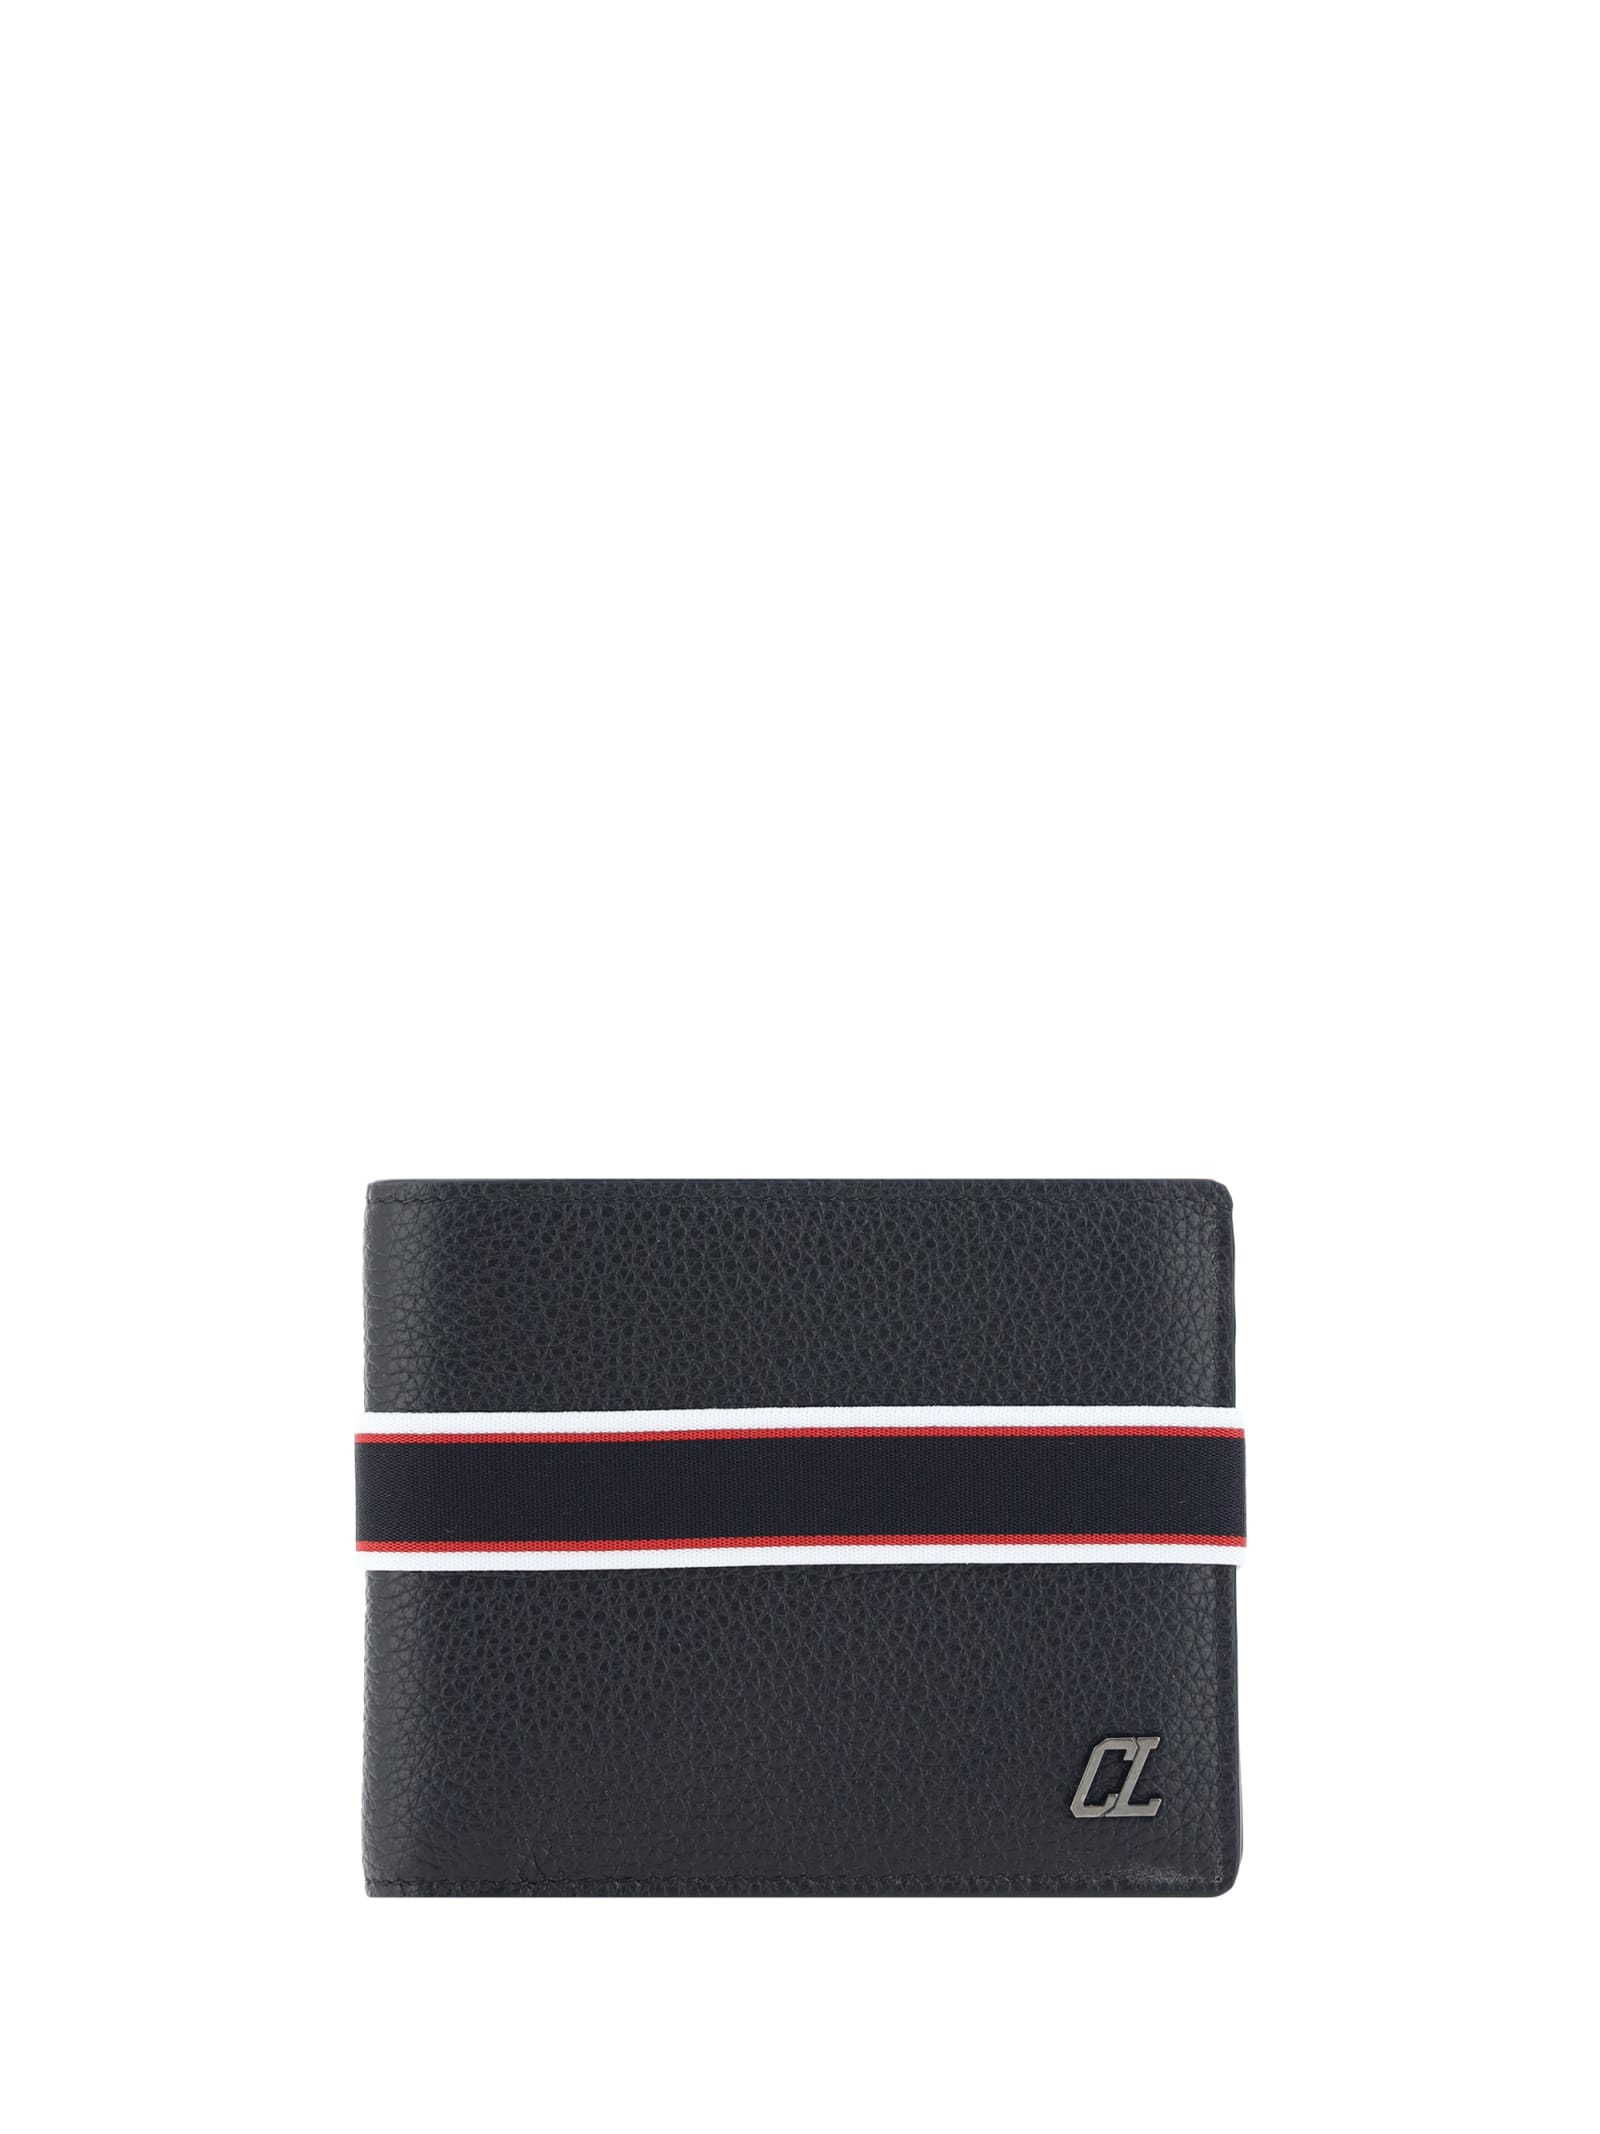 Christian Louboutin Wallet In Black